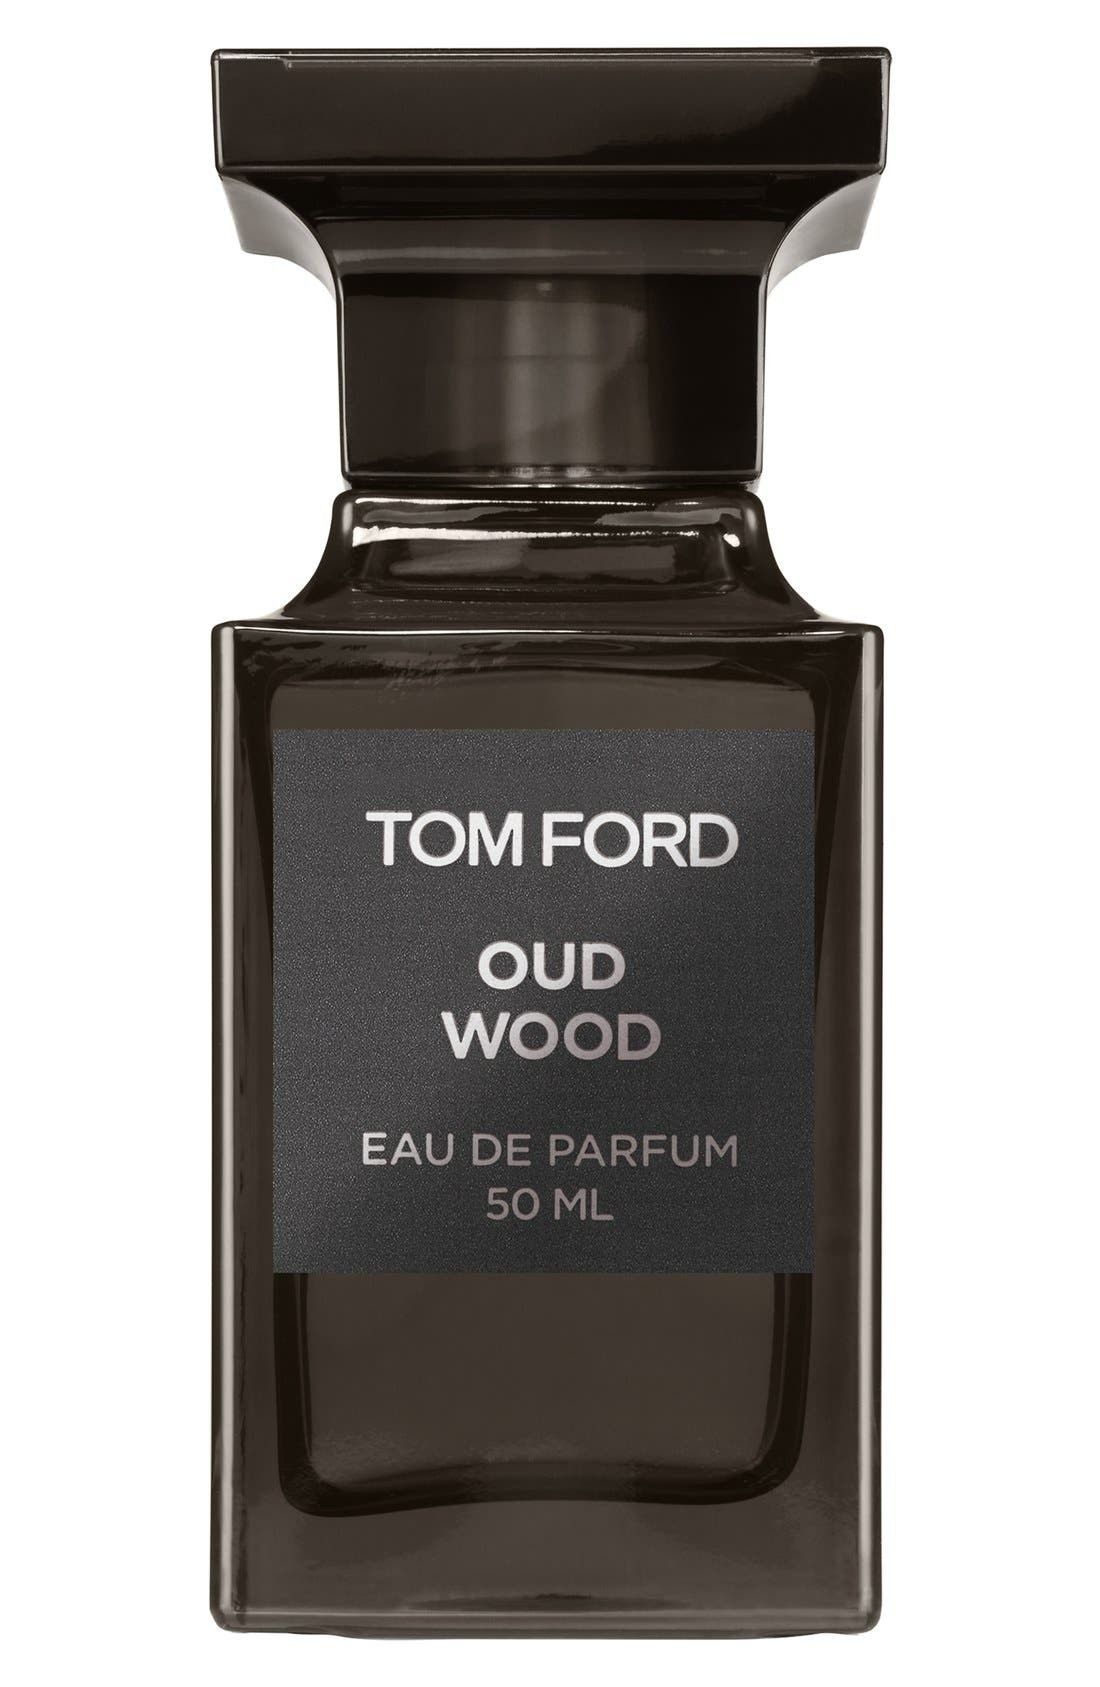 Tom Ford Private Blend Oud Wood Eau de Parfum at Nordstrom, Size 1 Oz | Nordstrom